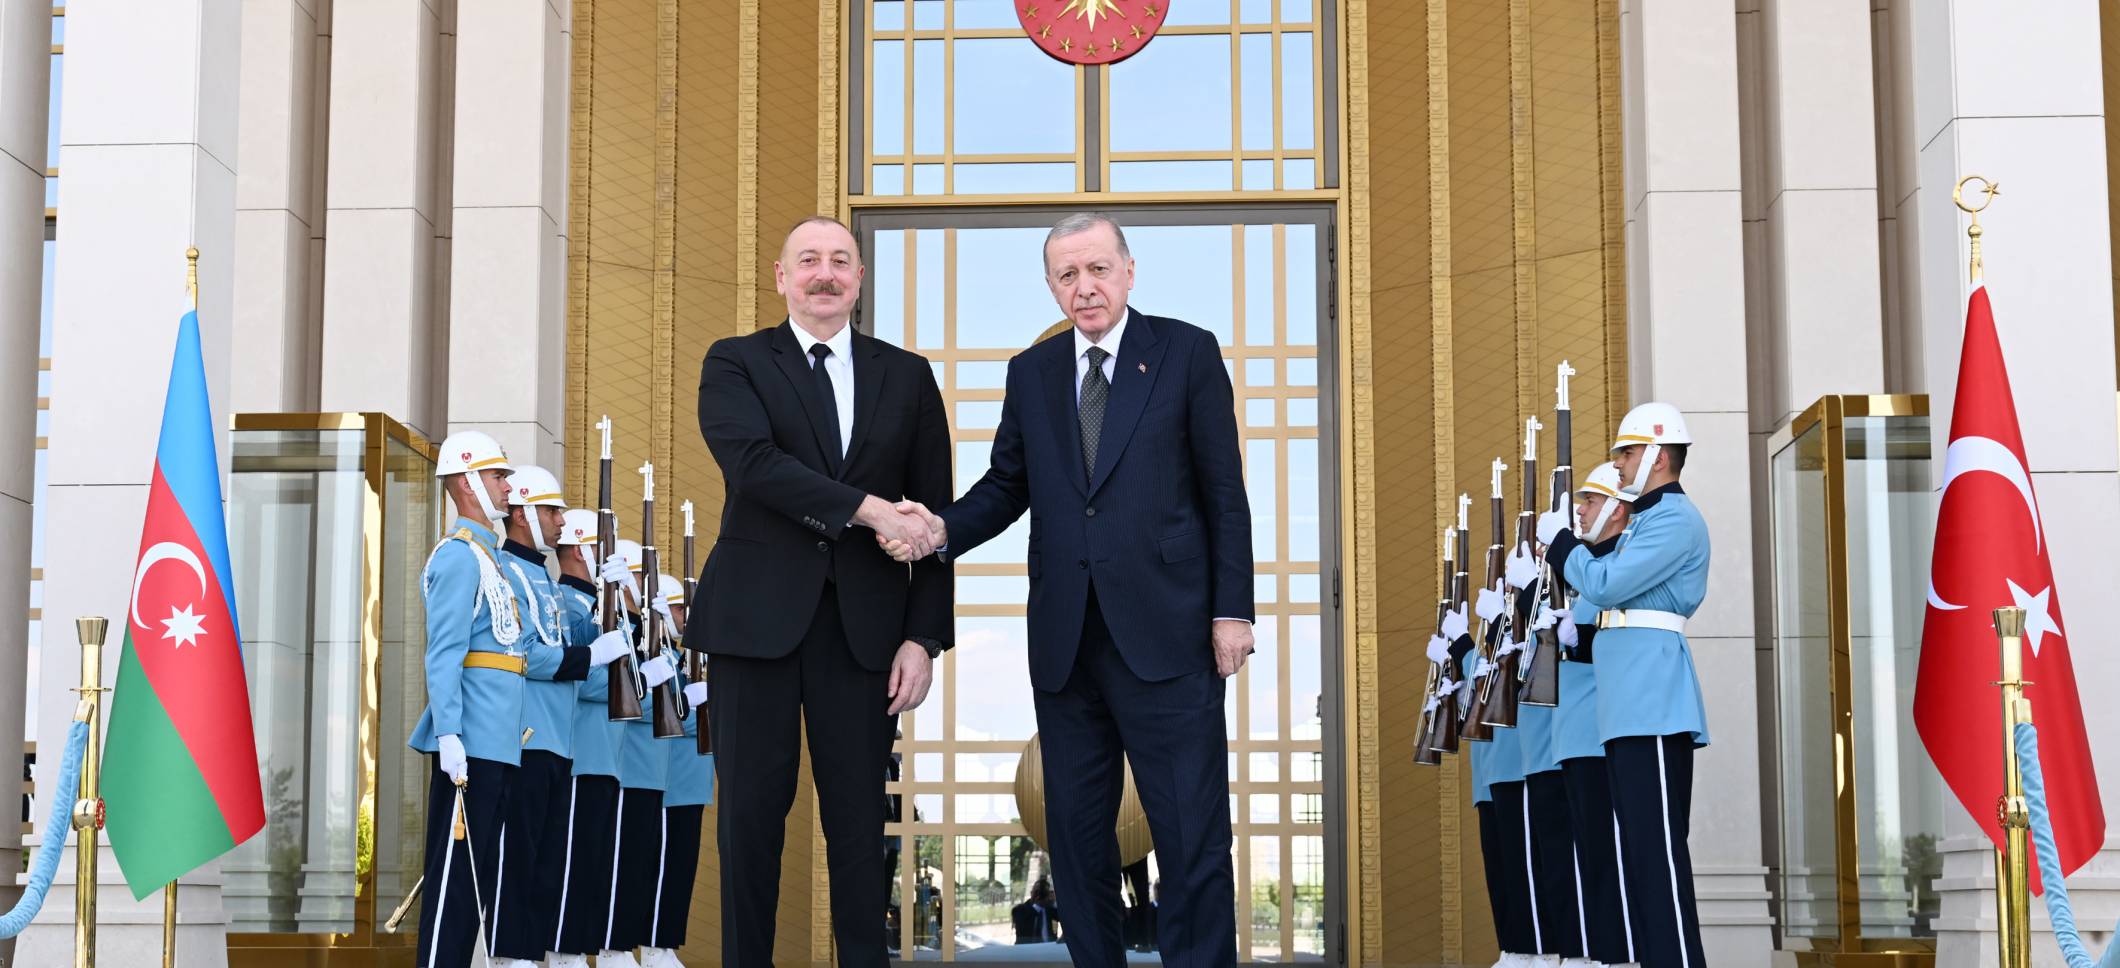 В Анкаре состоялась встреча Президента Ильхама Алиева и Президента Реджепа Тайипа Эрдогана один на один